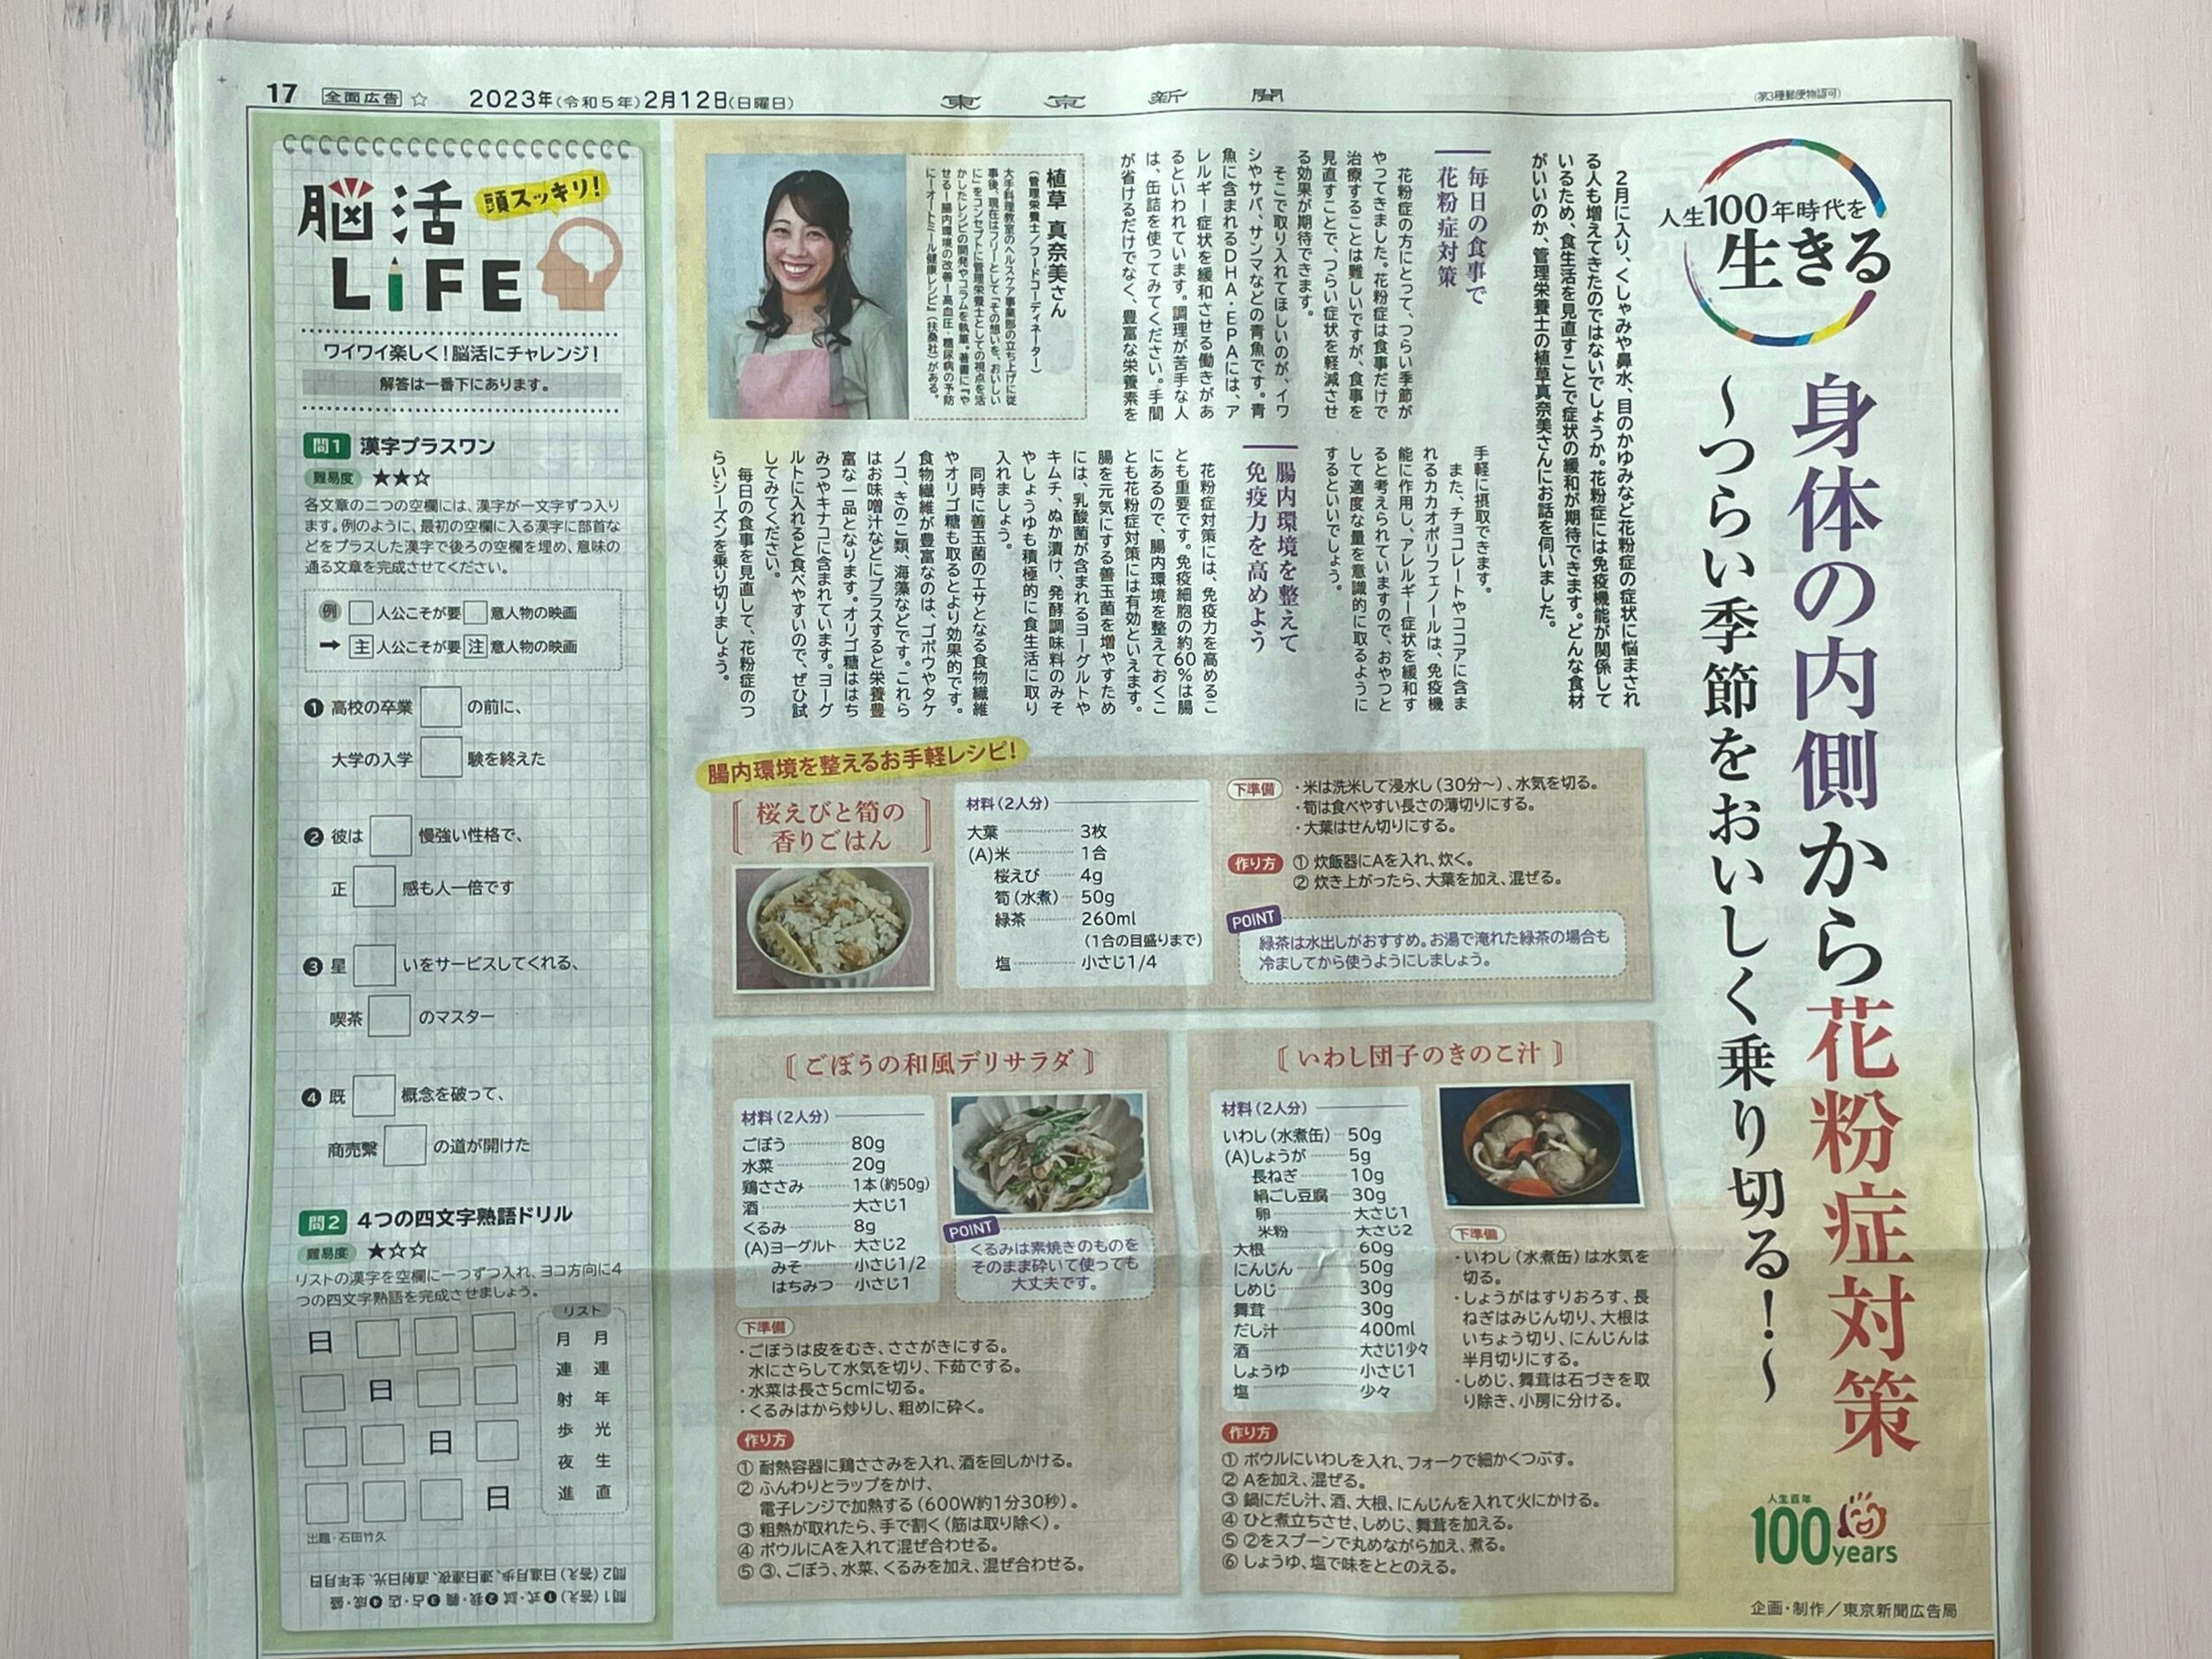 【東京新聞】人生100年時代を生きる 身体の内側から花粉症対策のイメージ